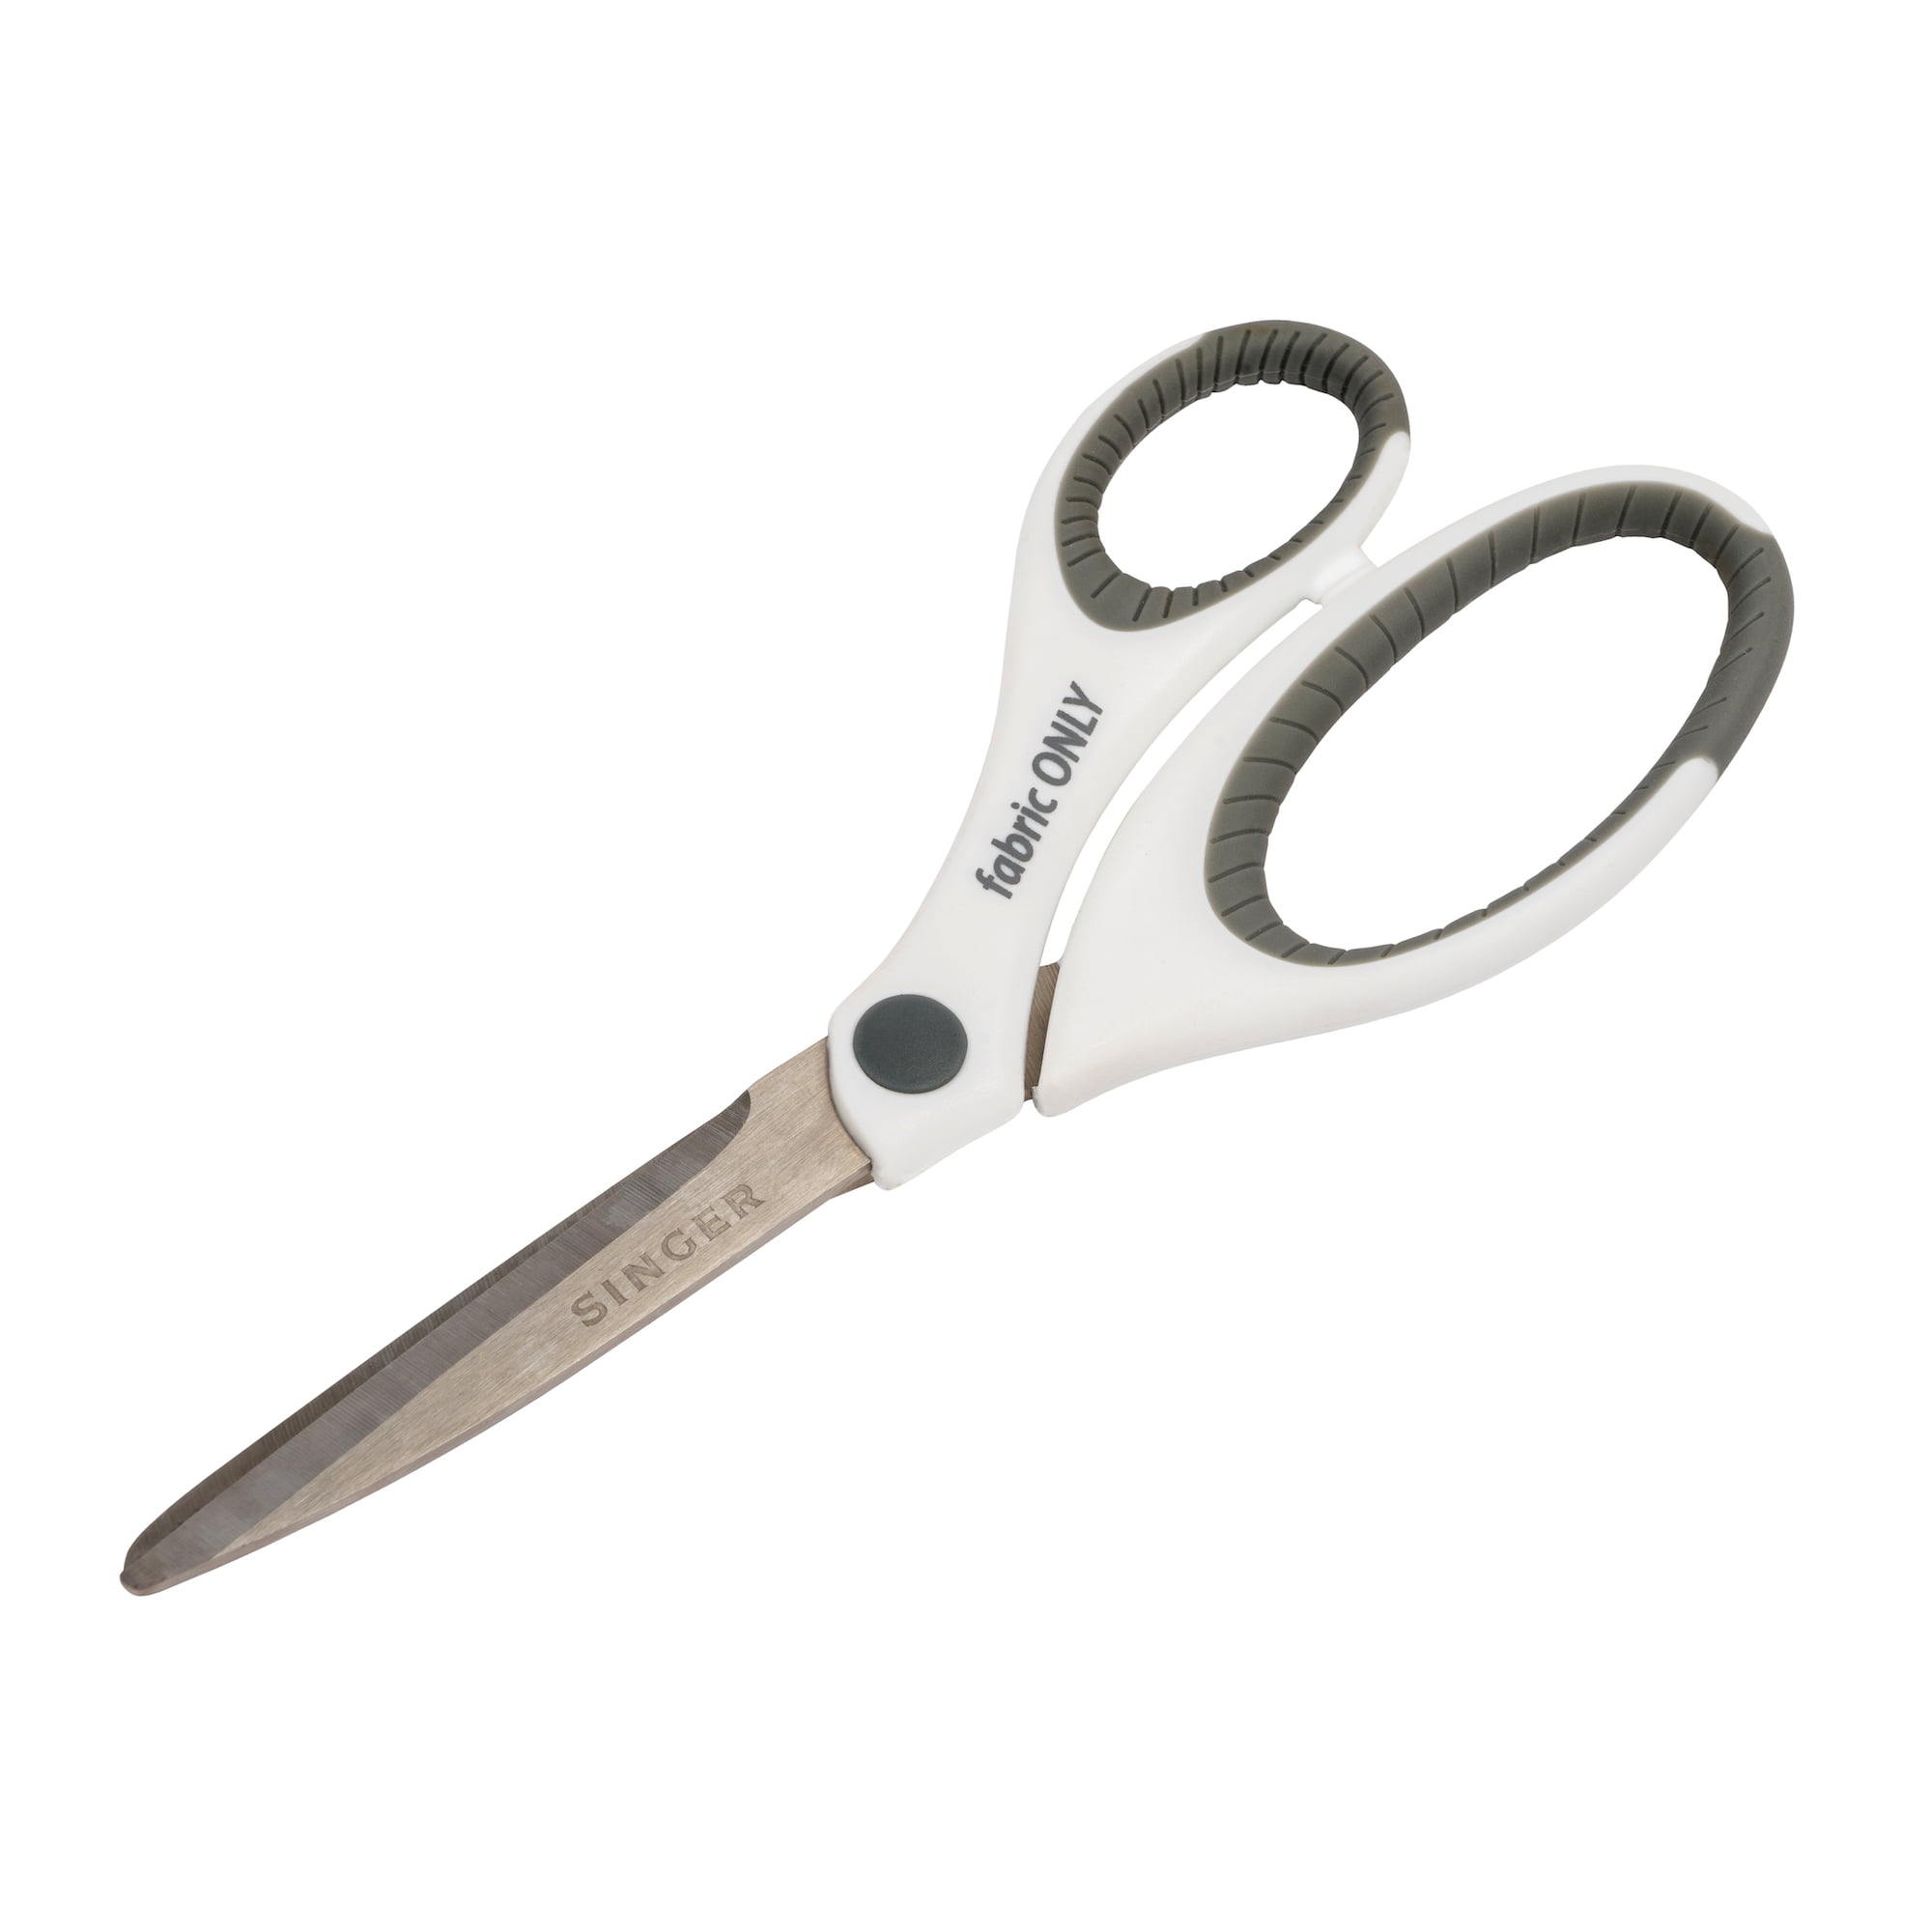 8-1/2 Left Hand Singer Scissors with Comfort Handle, Serrated blades